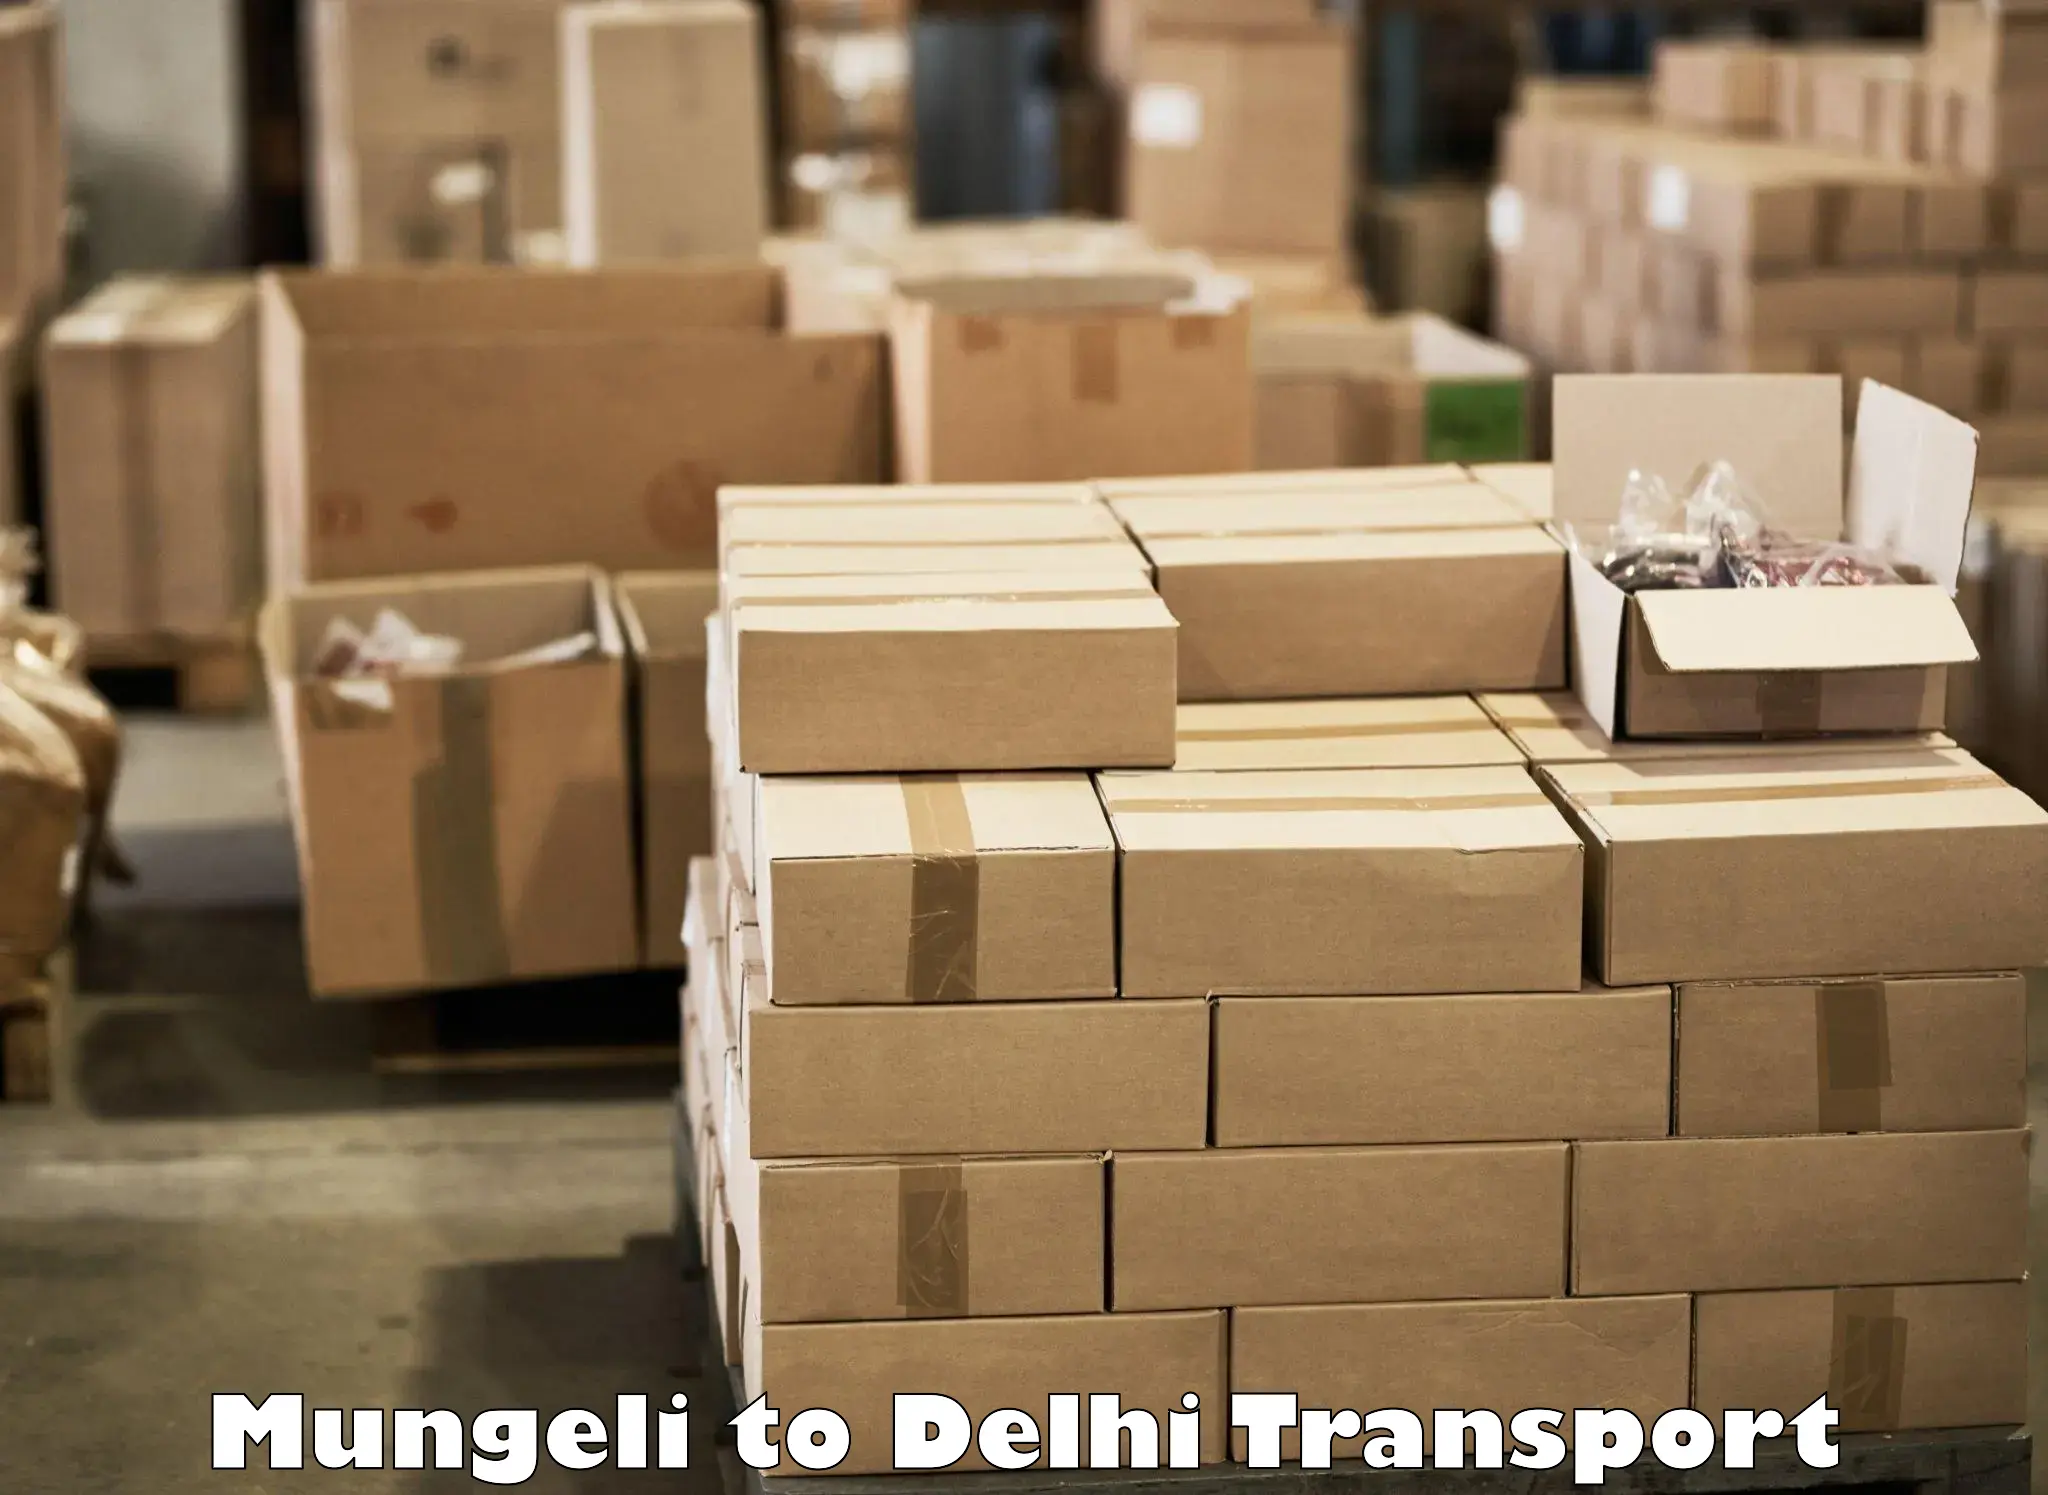 Commercial transport service Mungeli to Ashok Vihar